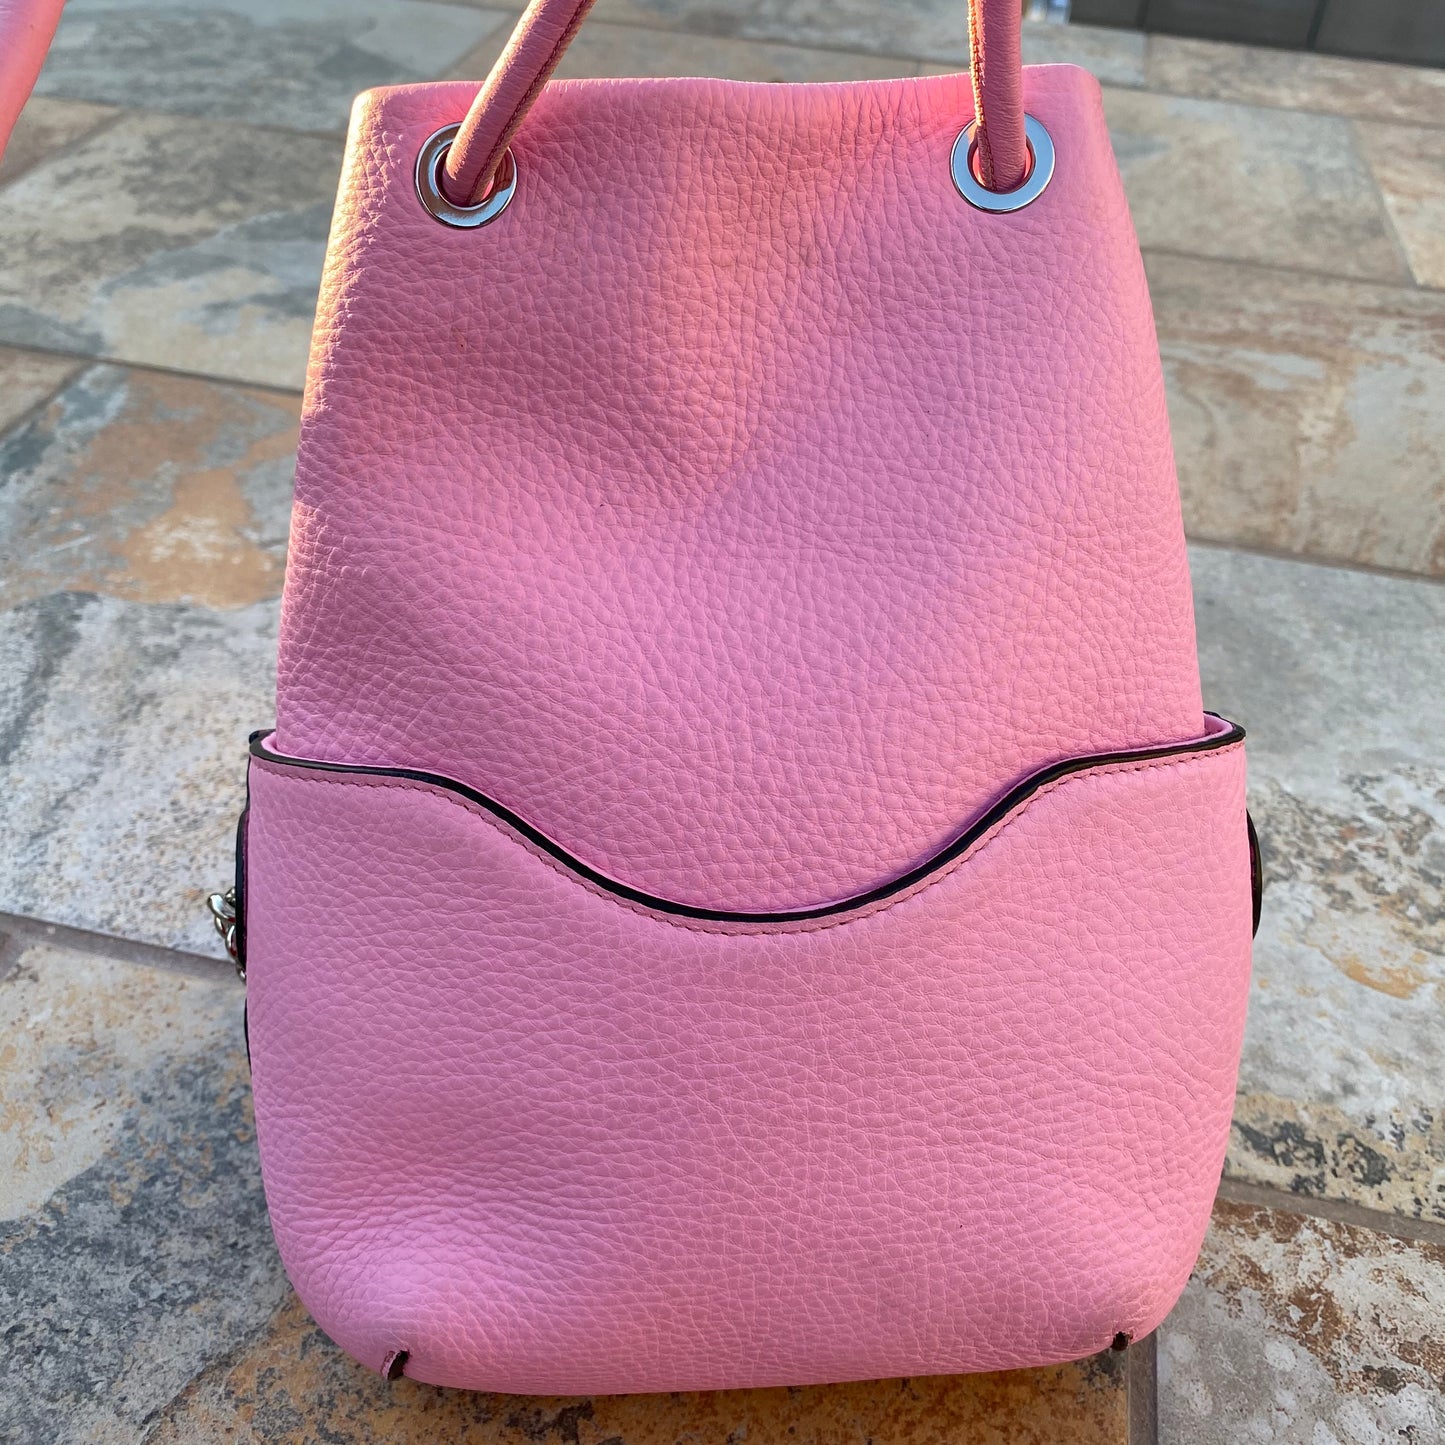 Meli Melo Hetty Peony Pink Daisy Laser Cut Bucket Bag